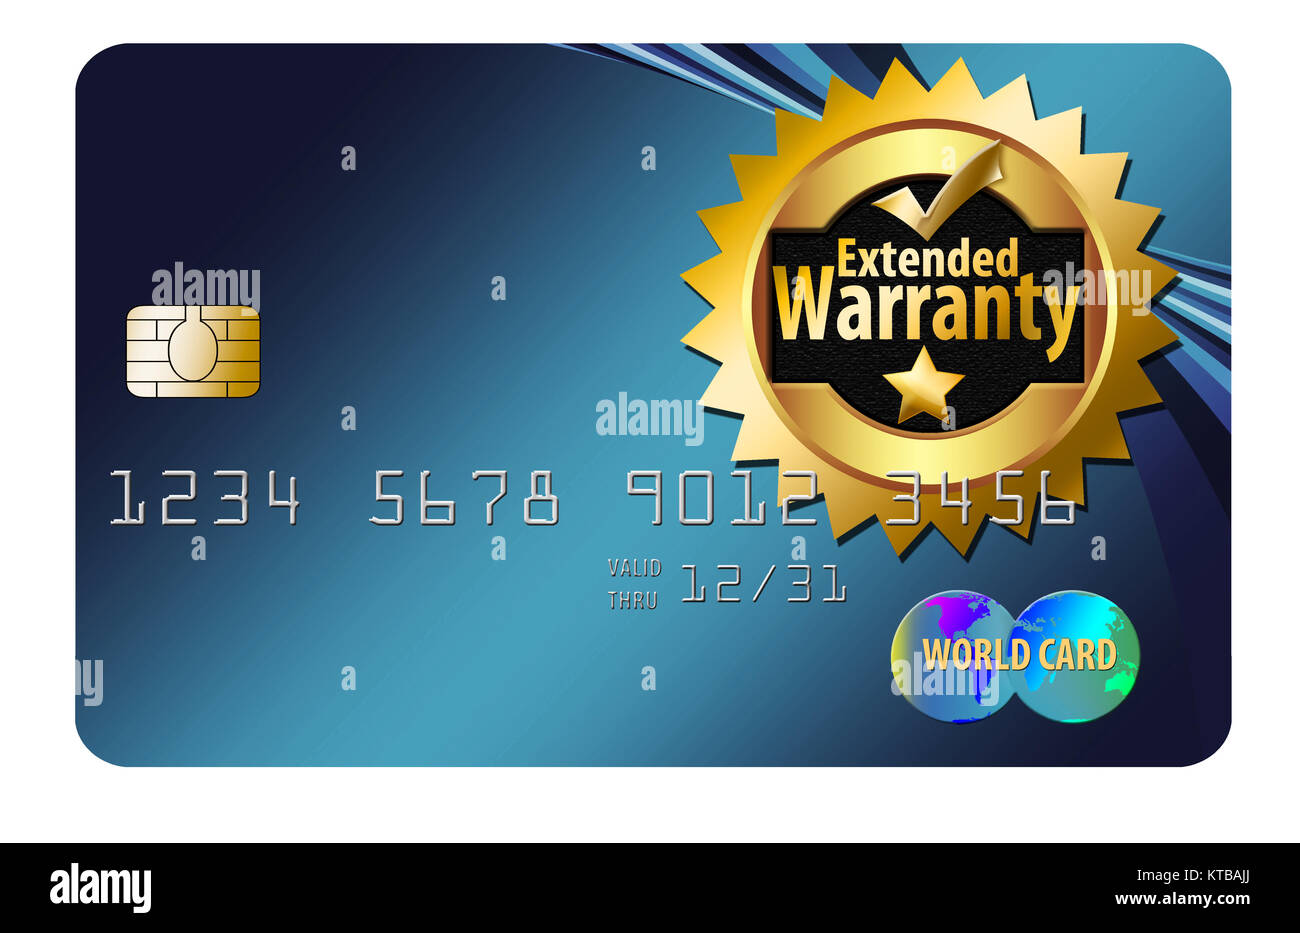 Ein Emblem für die Garantieverlängerung ist mit einer Kreditkarte in einer Abbildung zu sehen, in der es darum geht, beim Kauf mit einer Karte zusätzlichen Schutz zu erhalten. Stockfoto